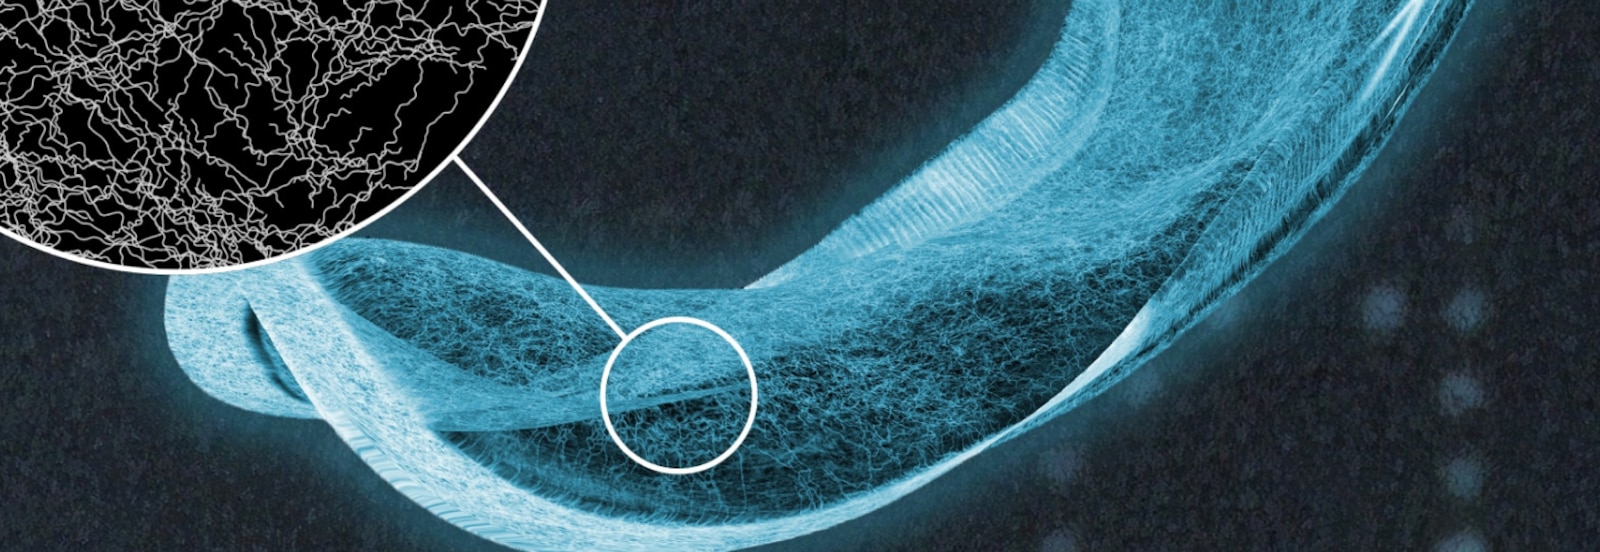 Röntgenkuva TENA-inkontinenssisuojasta ja yksityiskohtainen näkymä imuytimen kuiduista 